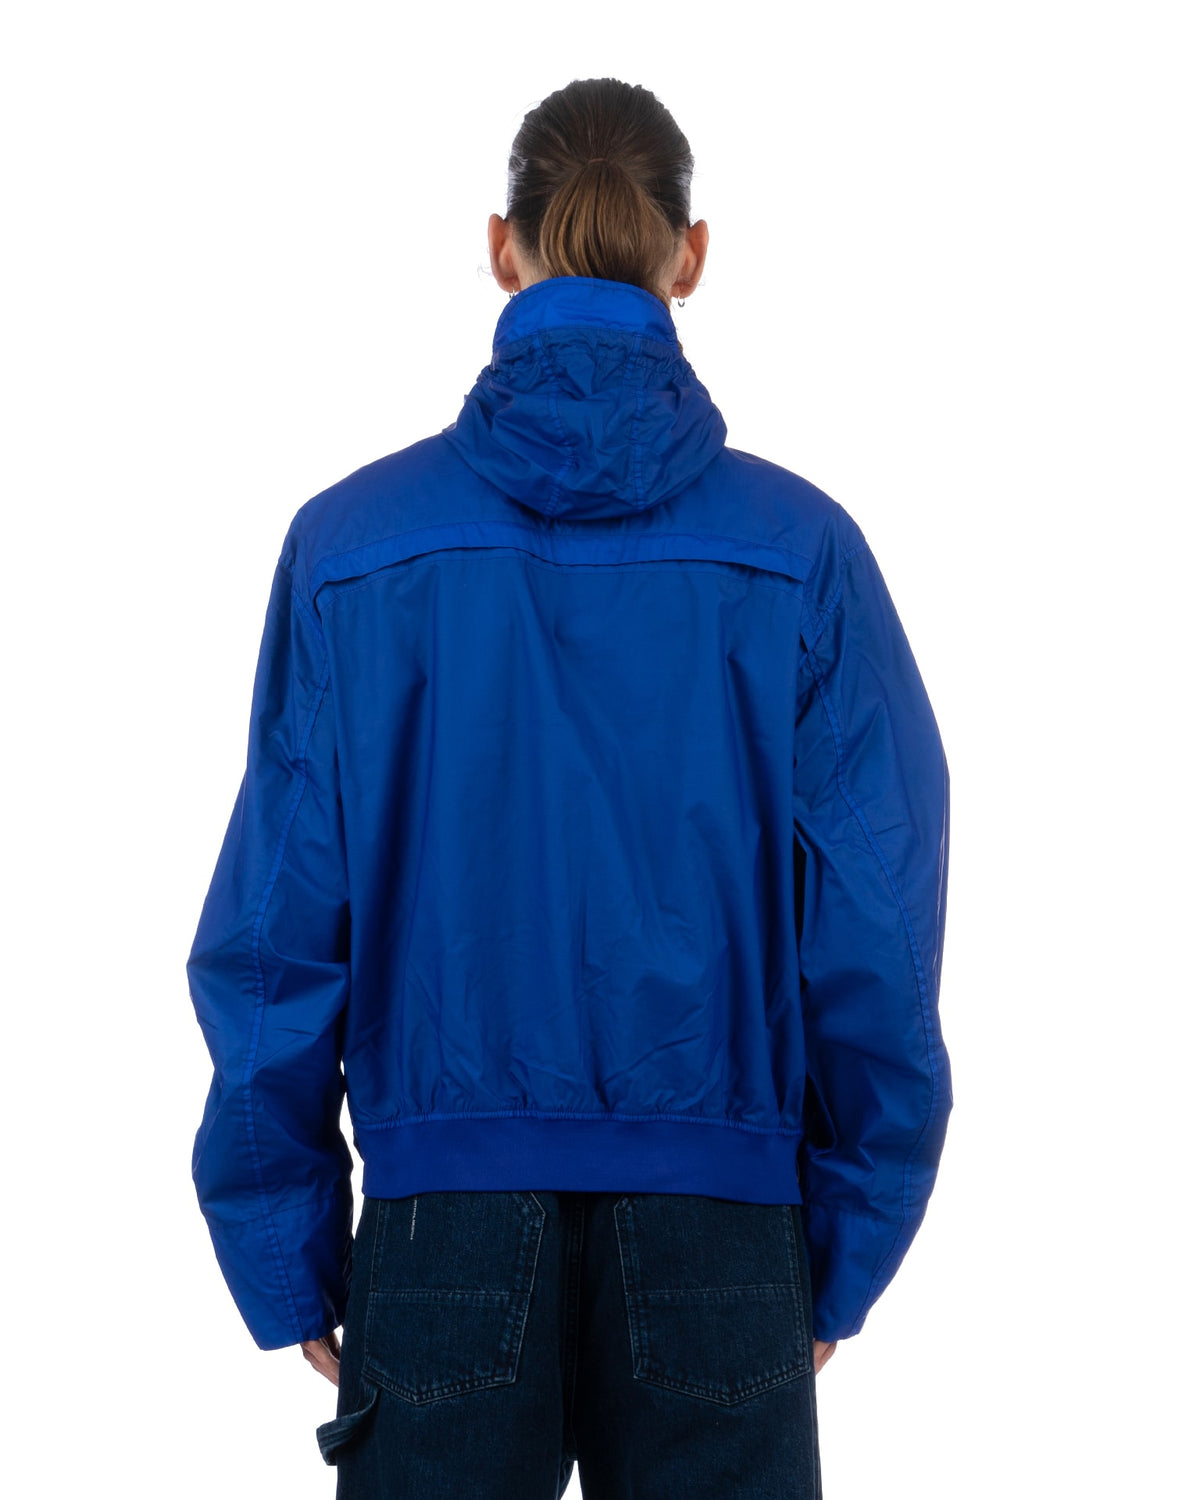 A-COLD-WALL* | Asymmetric Jacket Volt Blue - Concrete